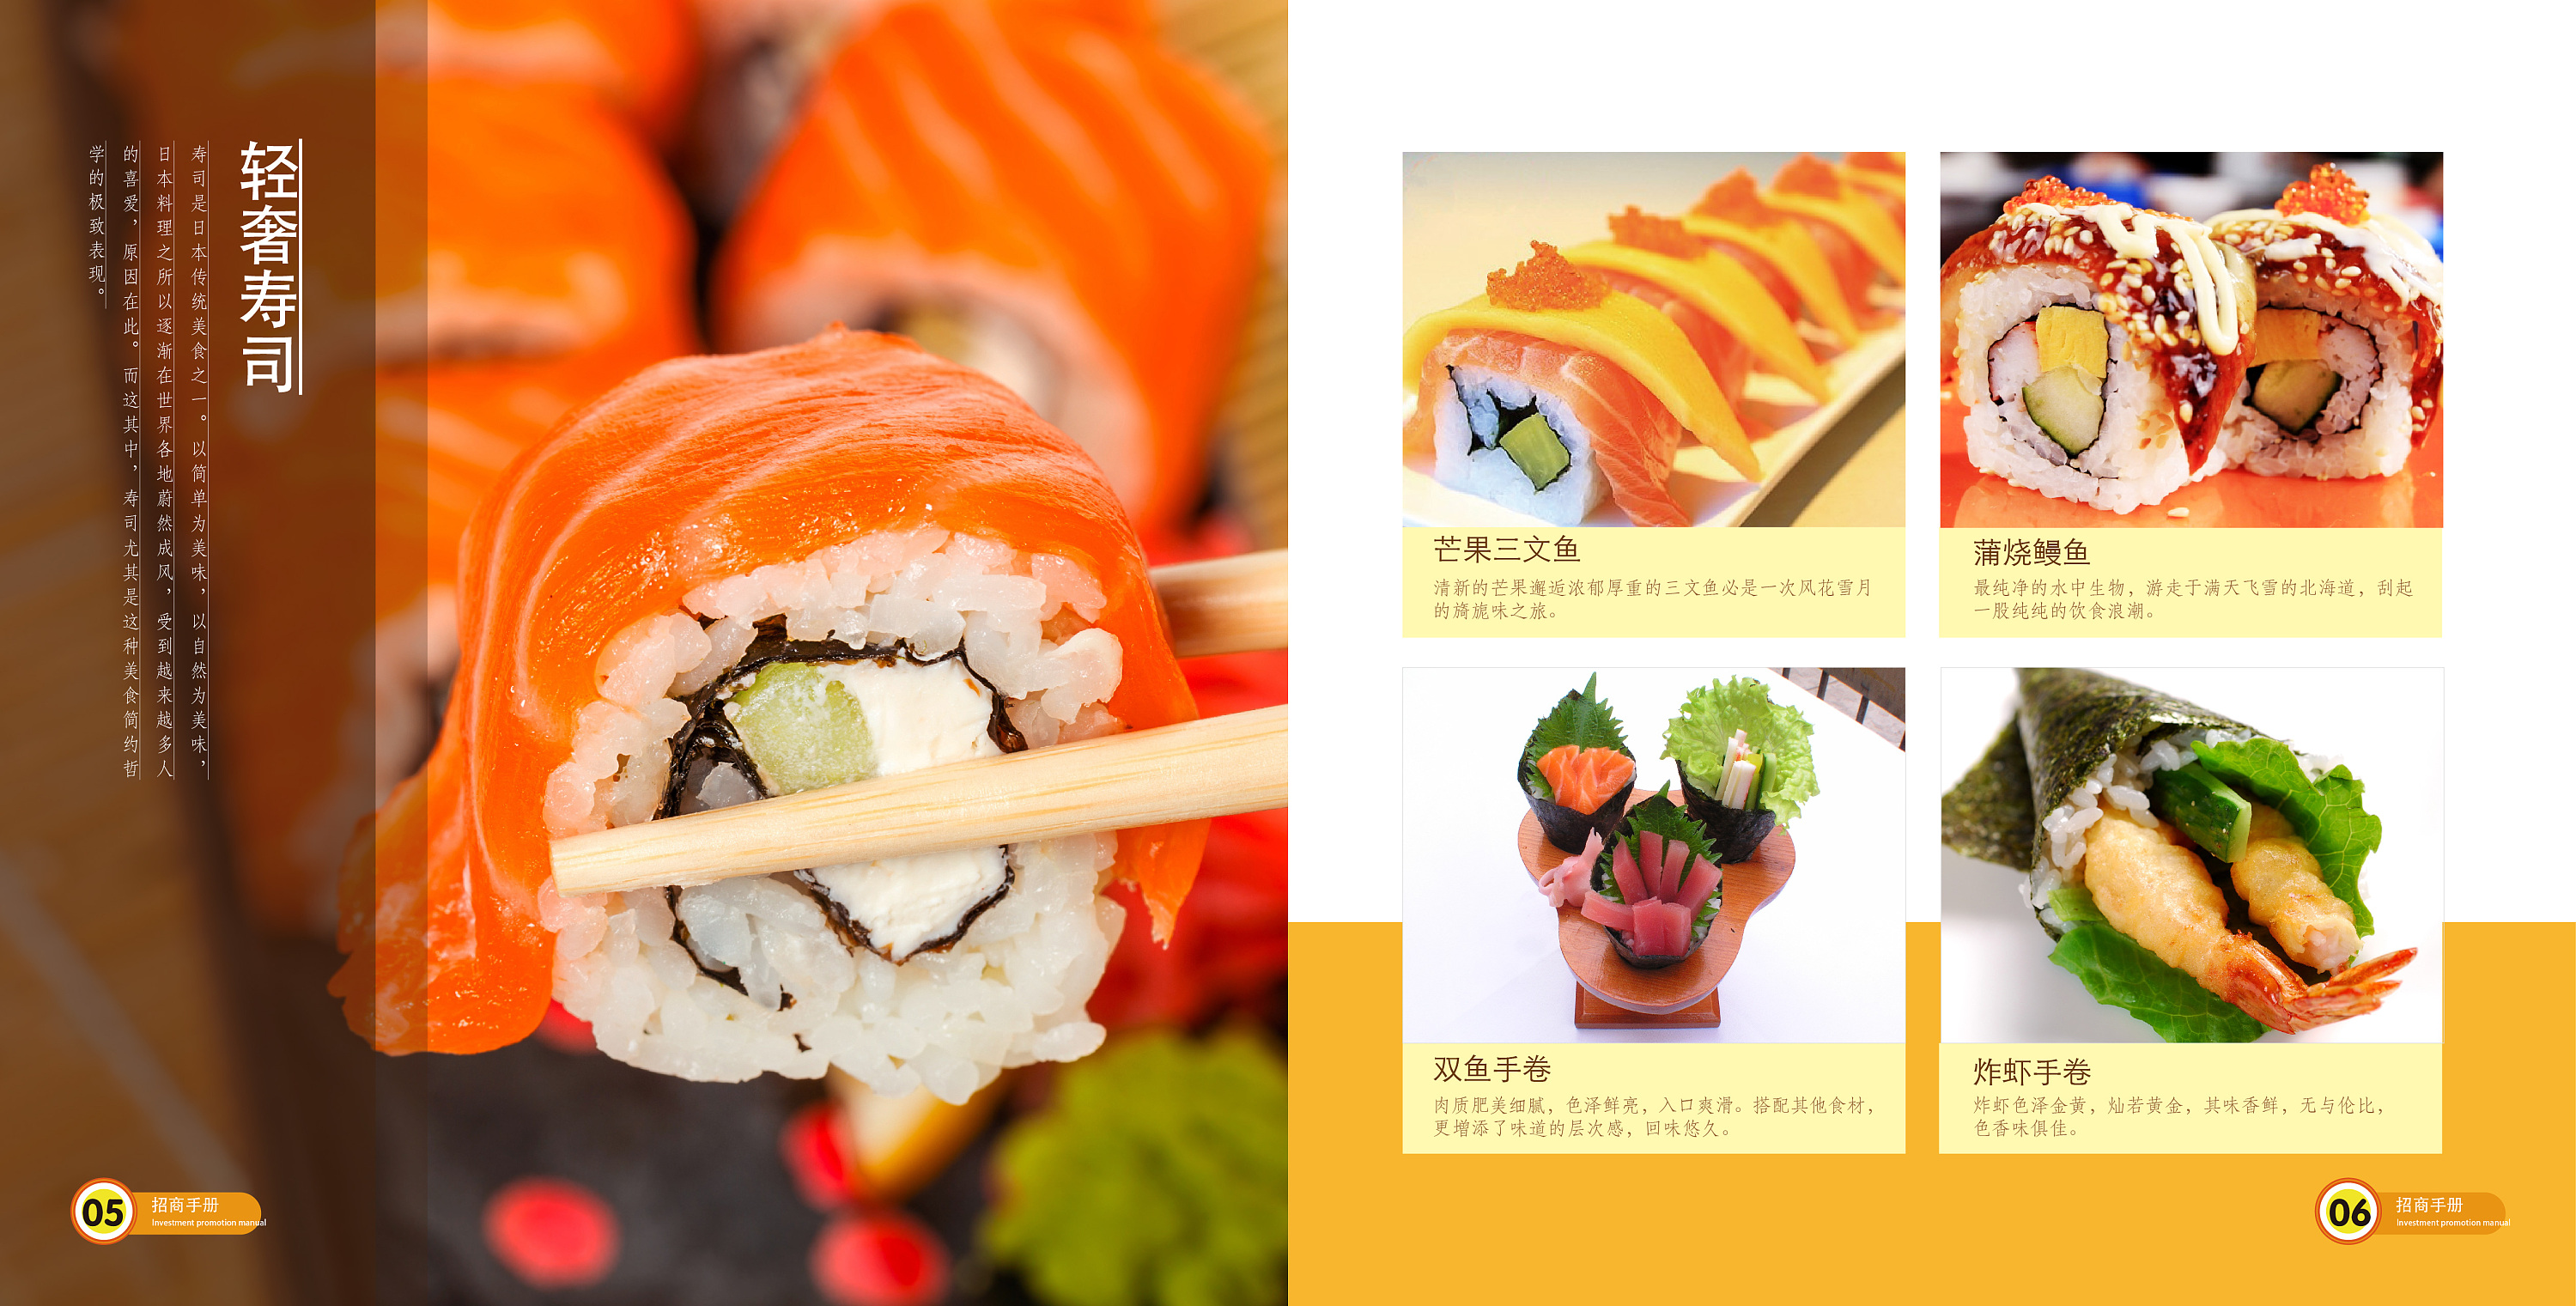 餐饮美食小吃招商产品画册手册加盟章鱼烧寿司